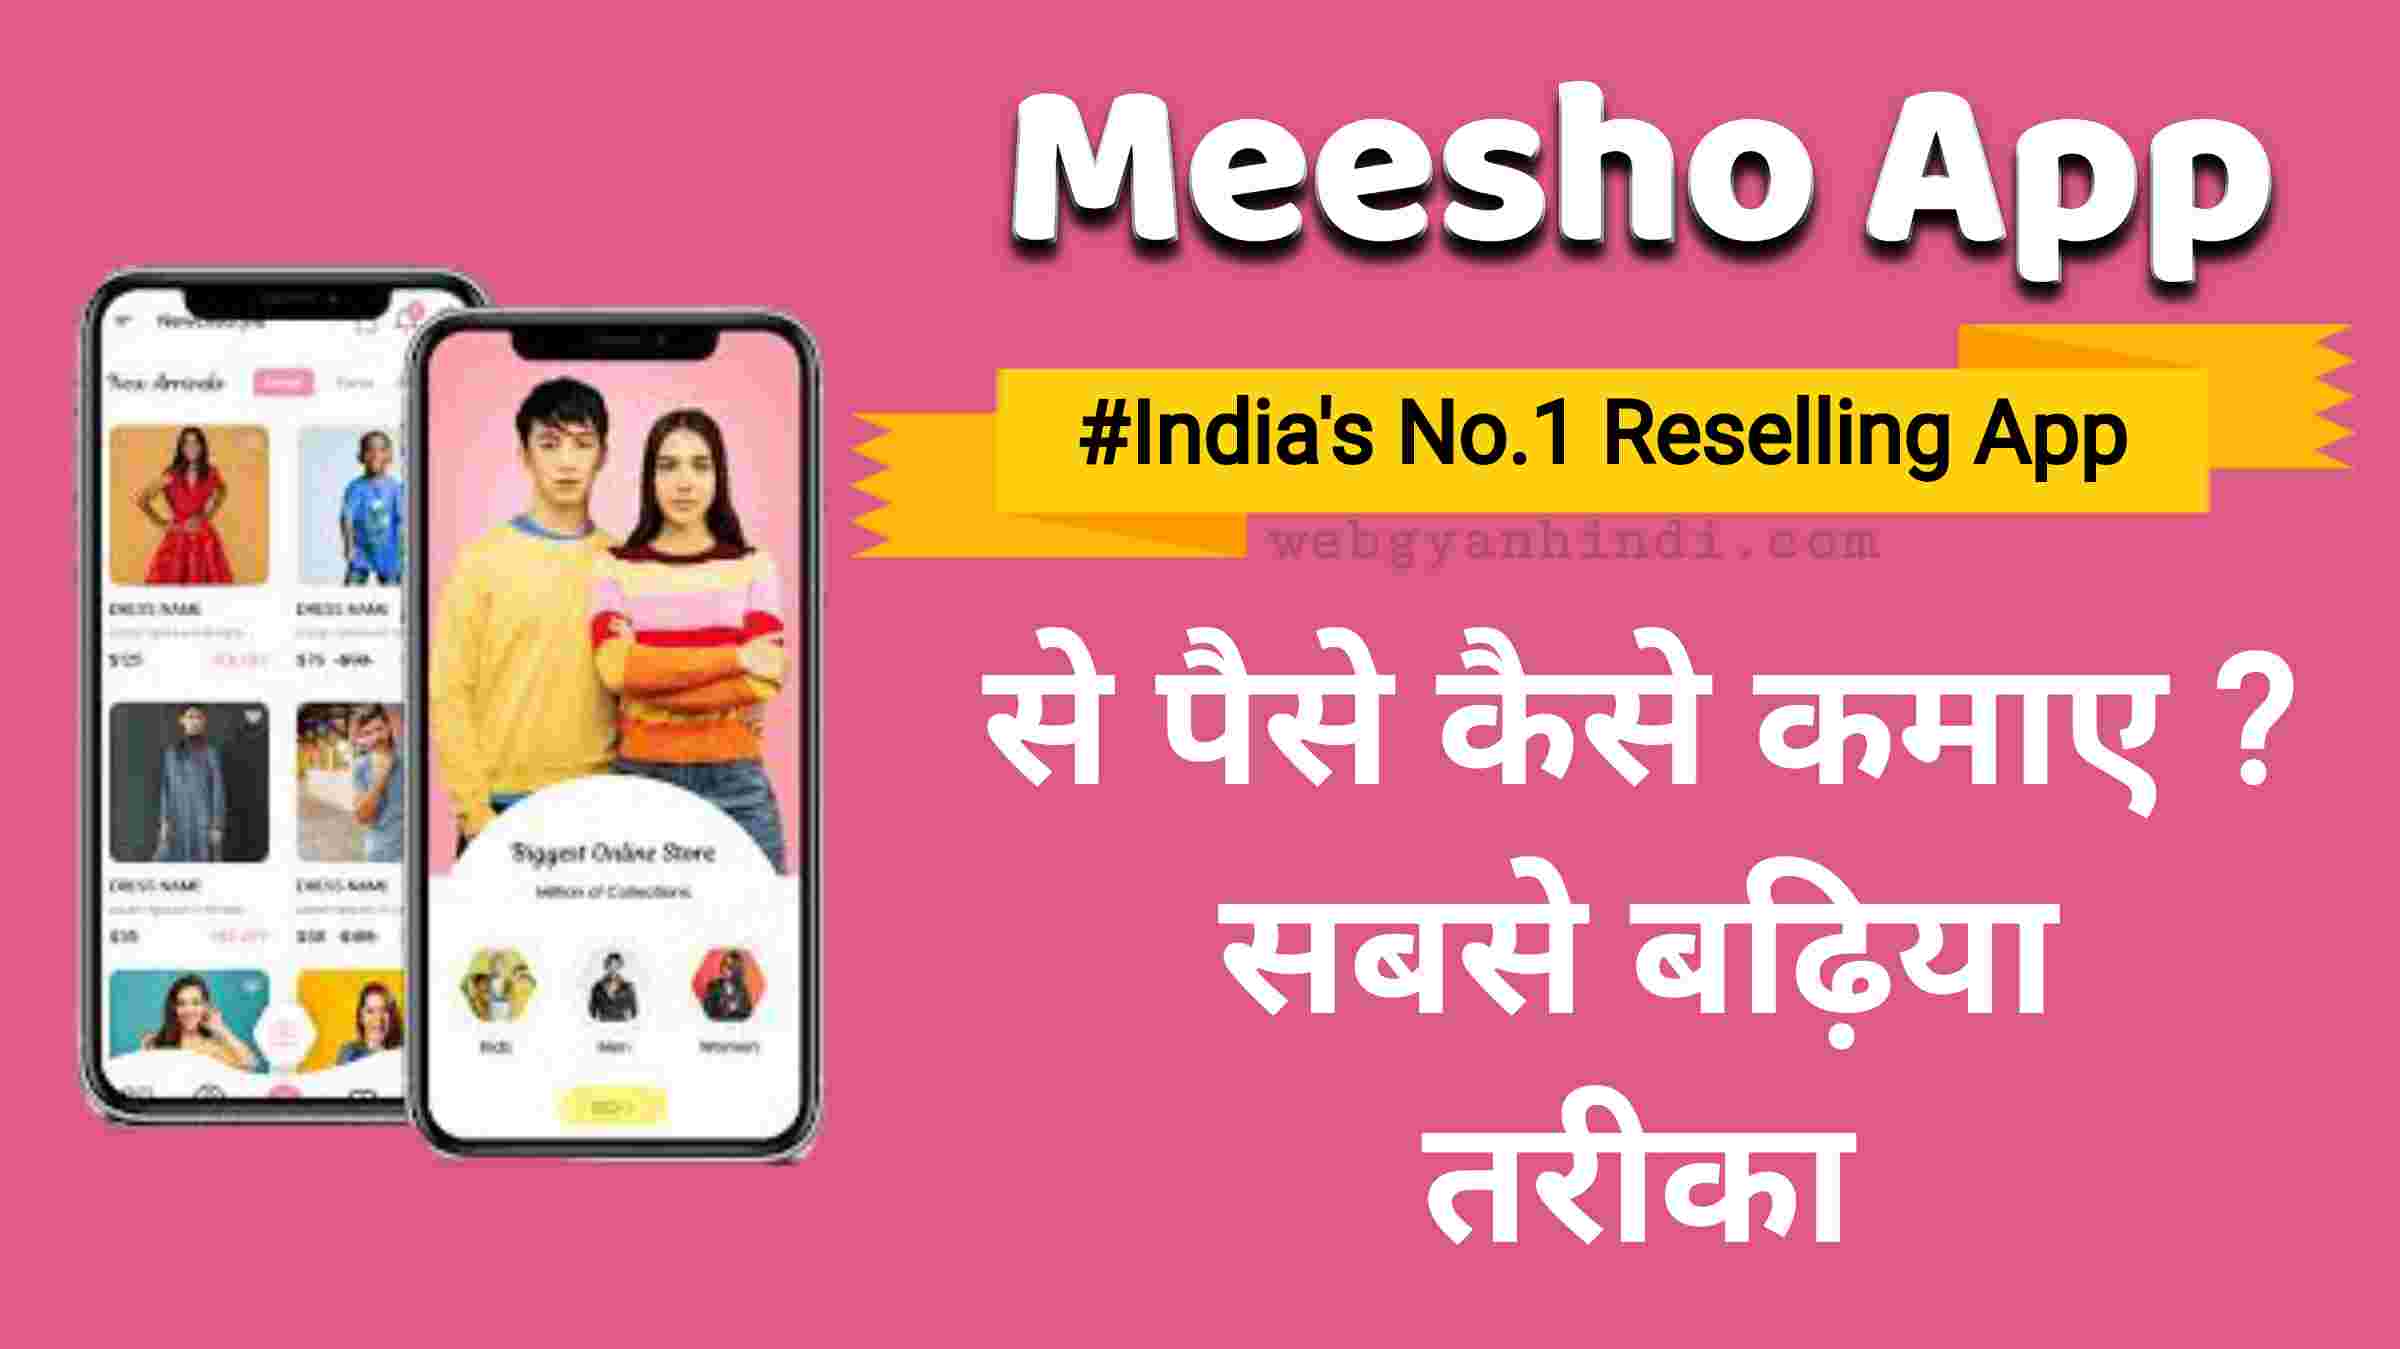 Meesho App से पैसे कैसे कमाए ? सबसे बढ़िया तरीका 2021